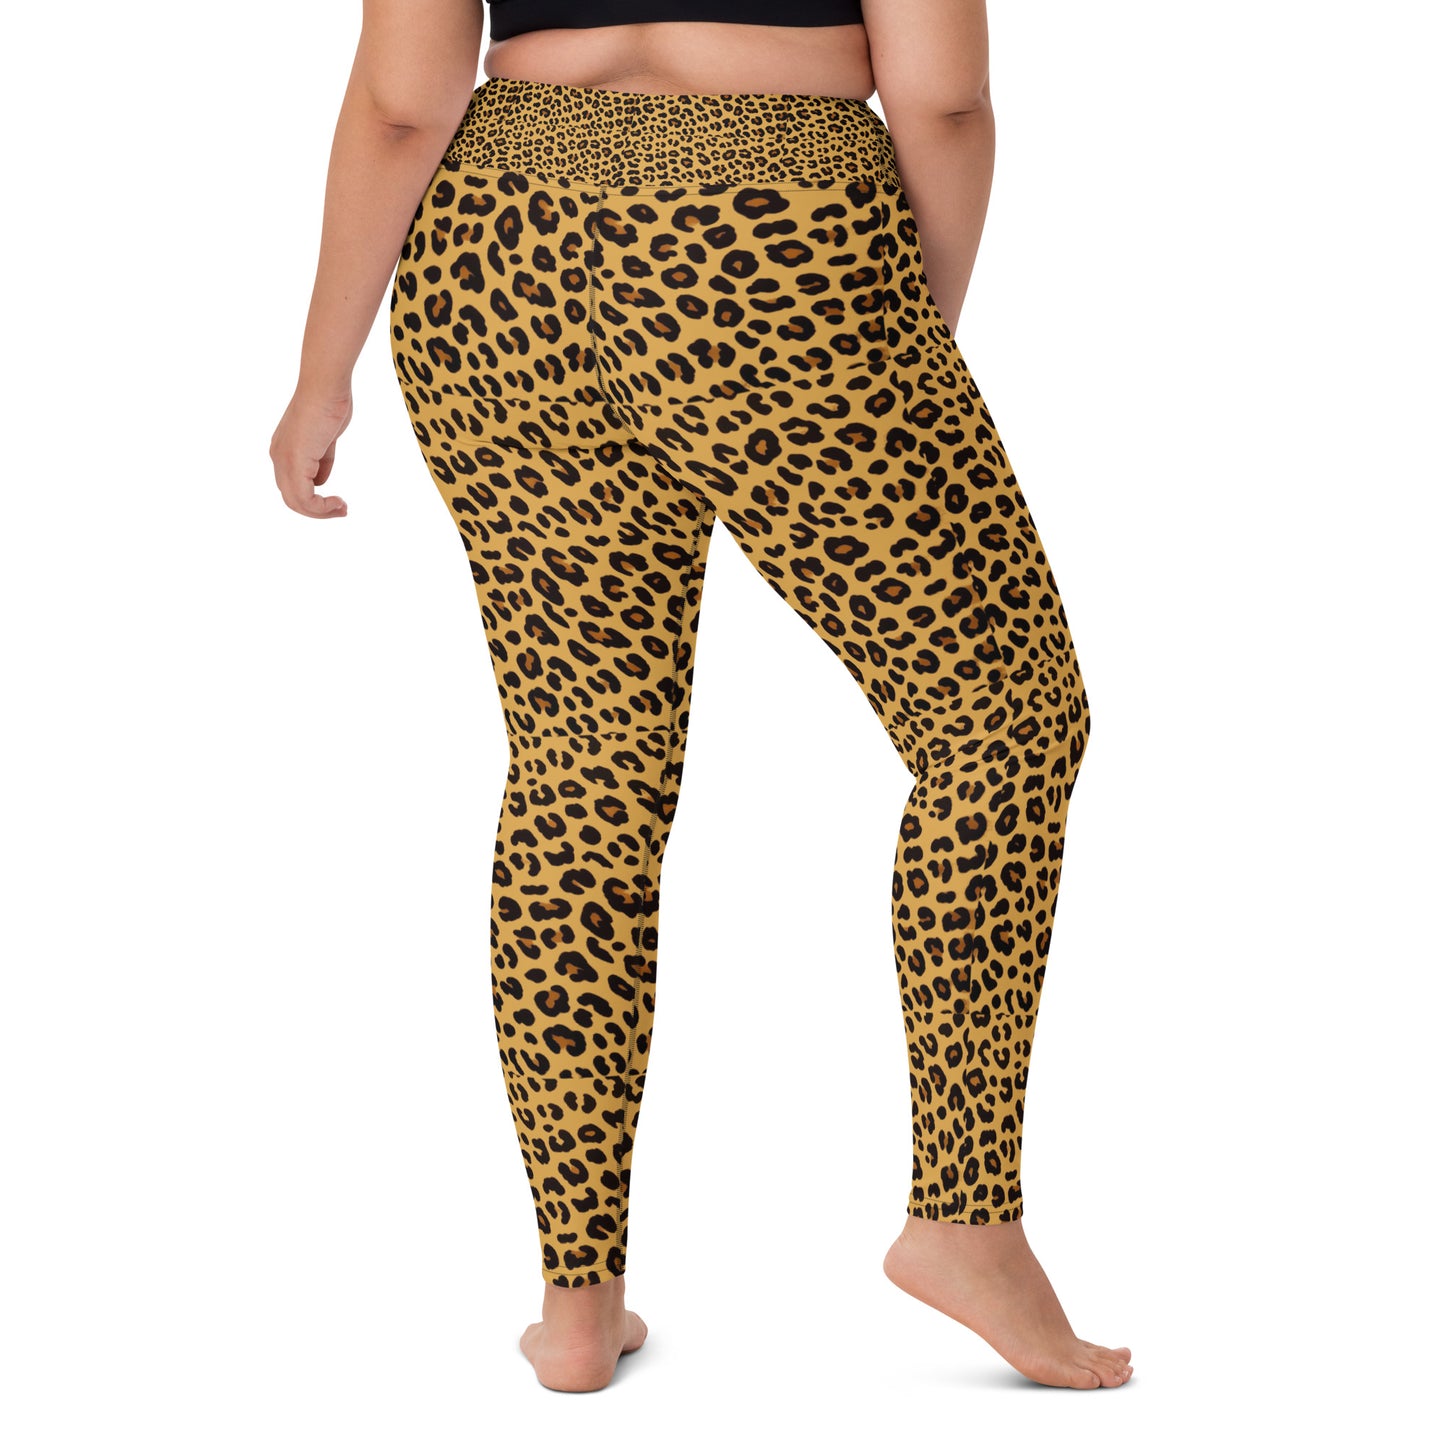 Gorky #DATASS Yoga Pants - Leopard Print